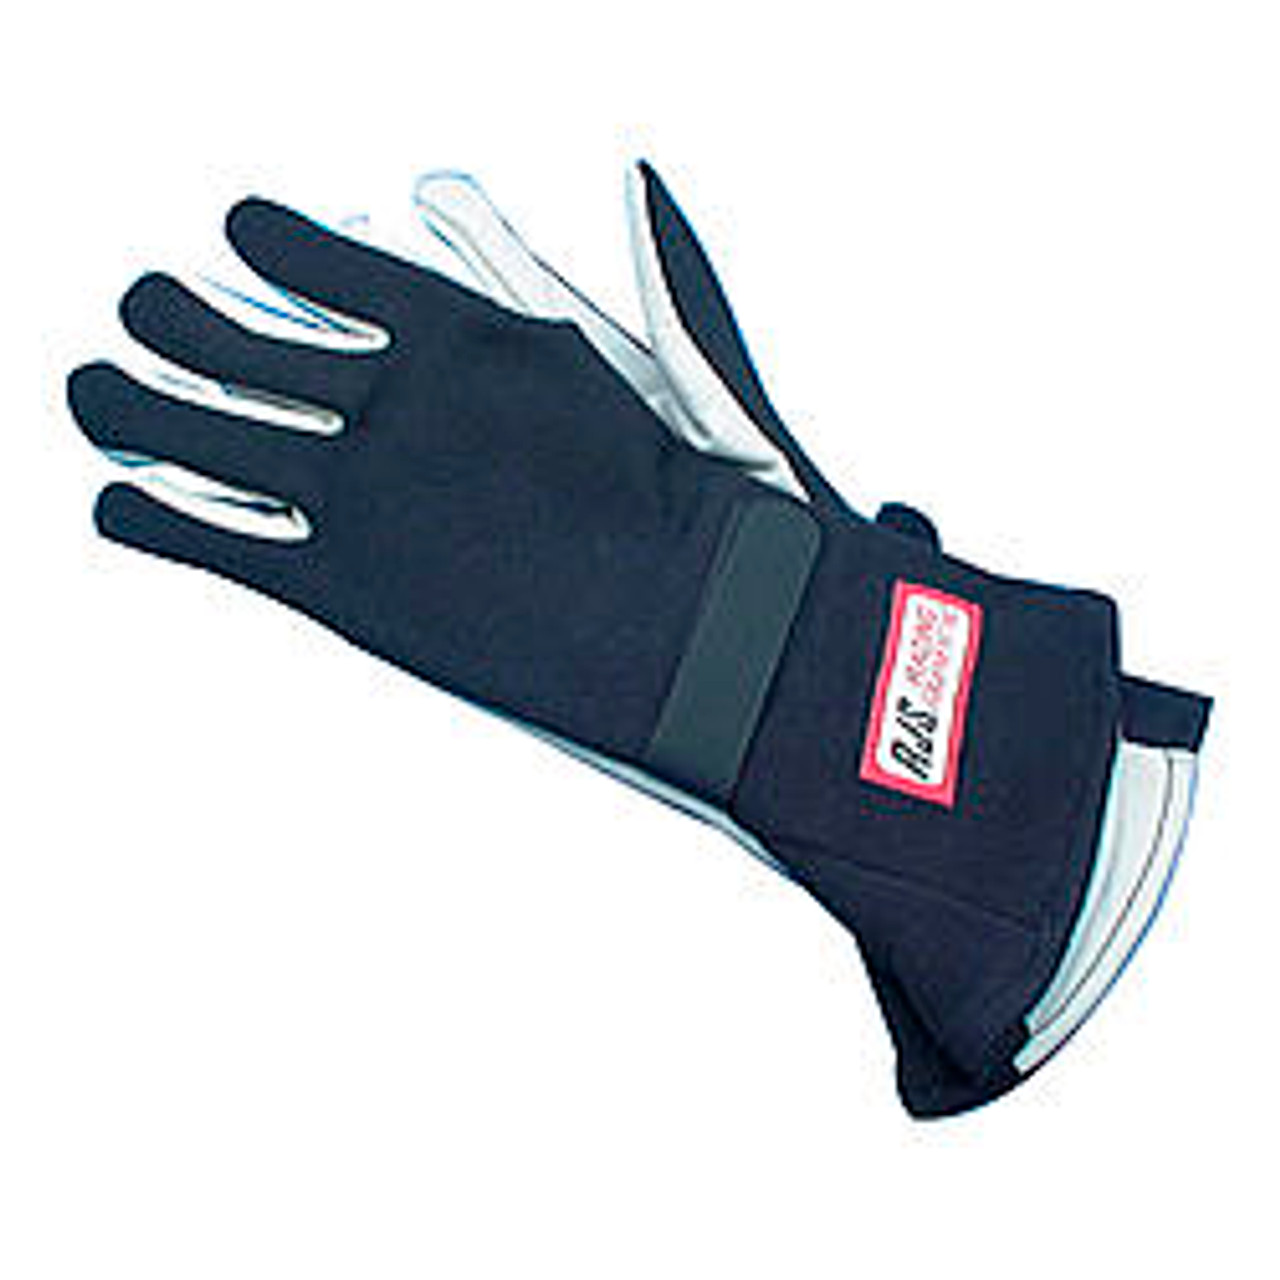 RJS Gloves Nomex S/L LG Black SFI-1 - RJS600020105